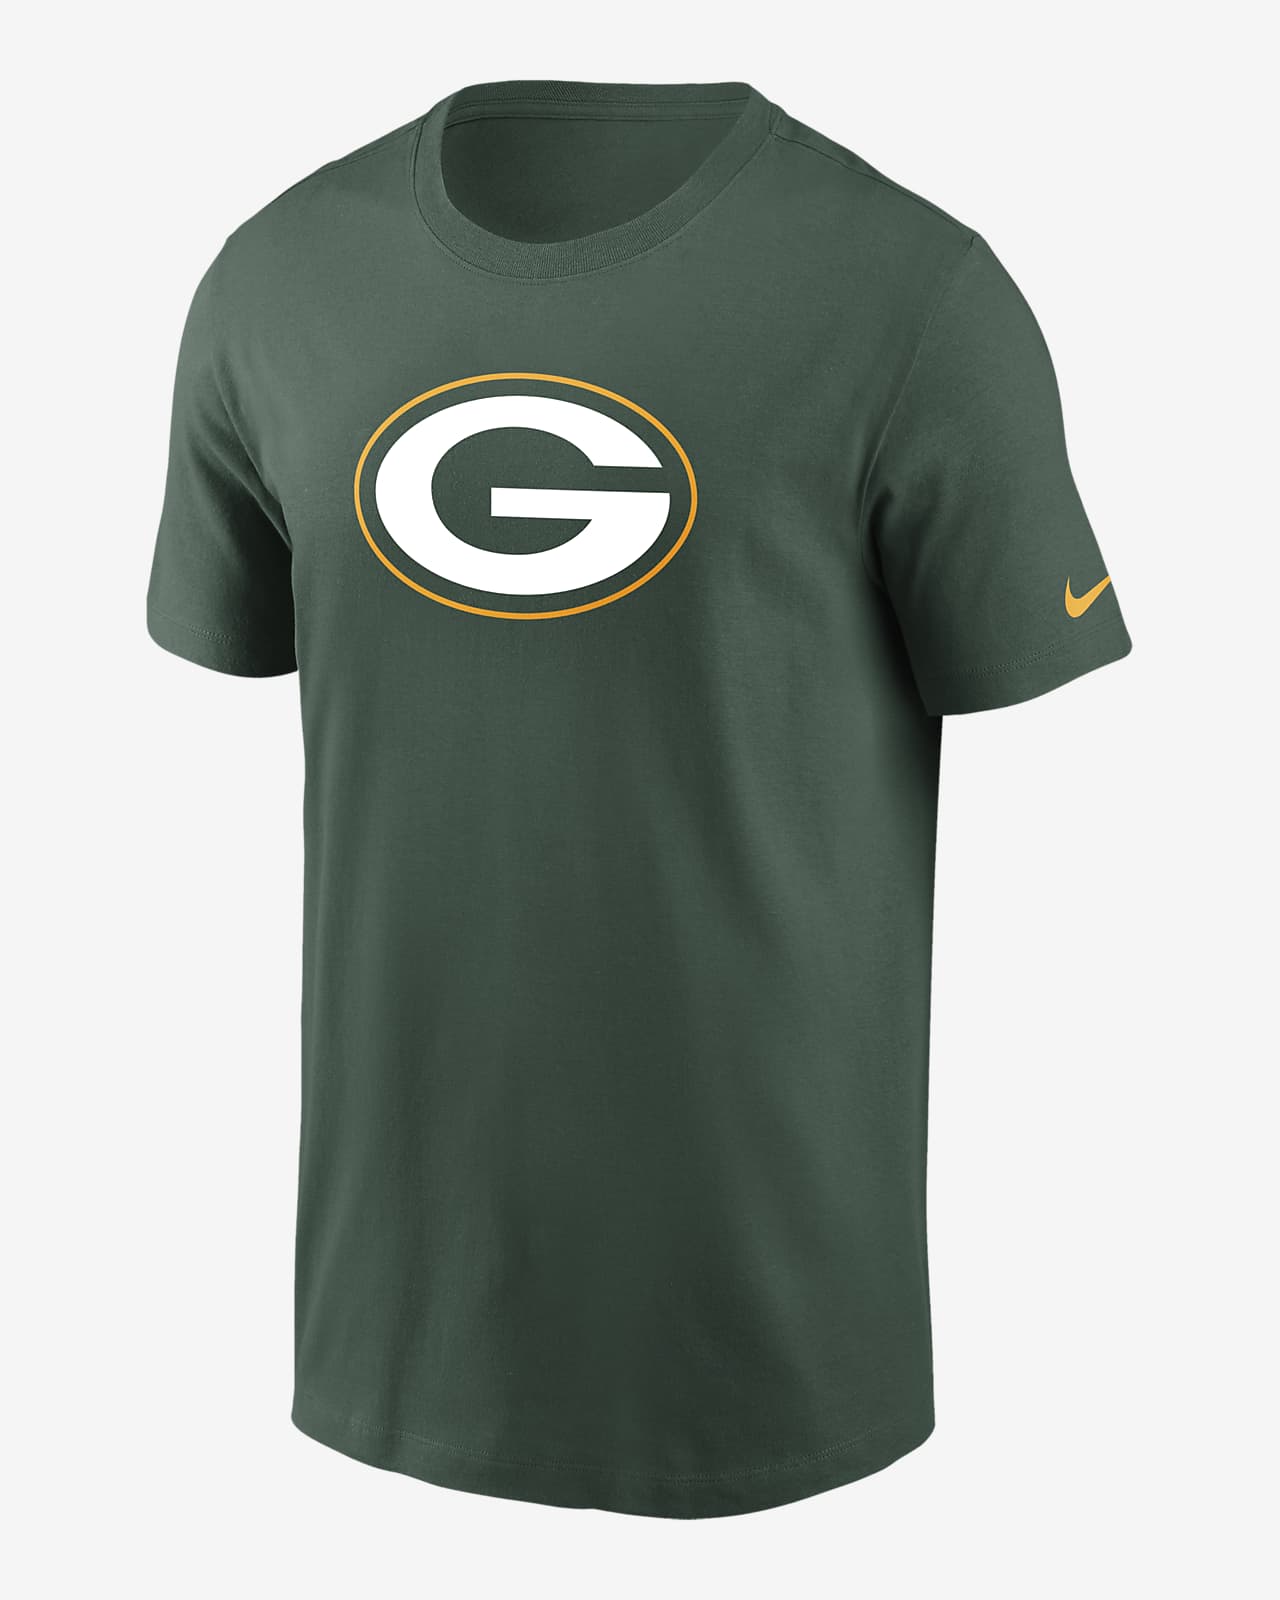 T-Shirt med logo Nike Essential (NFL Green bay Packers) för ungdom (killar)